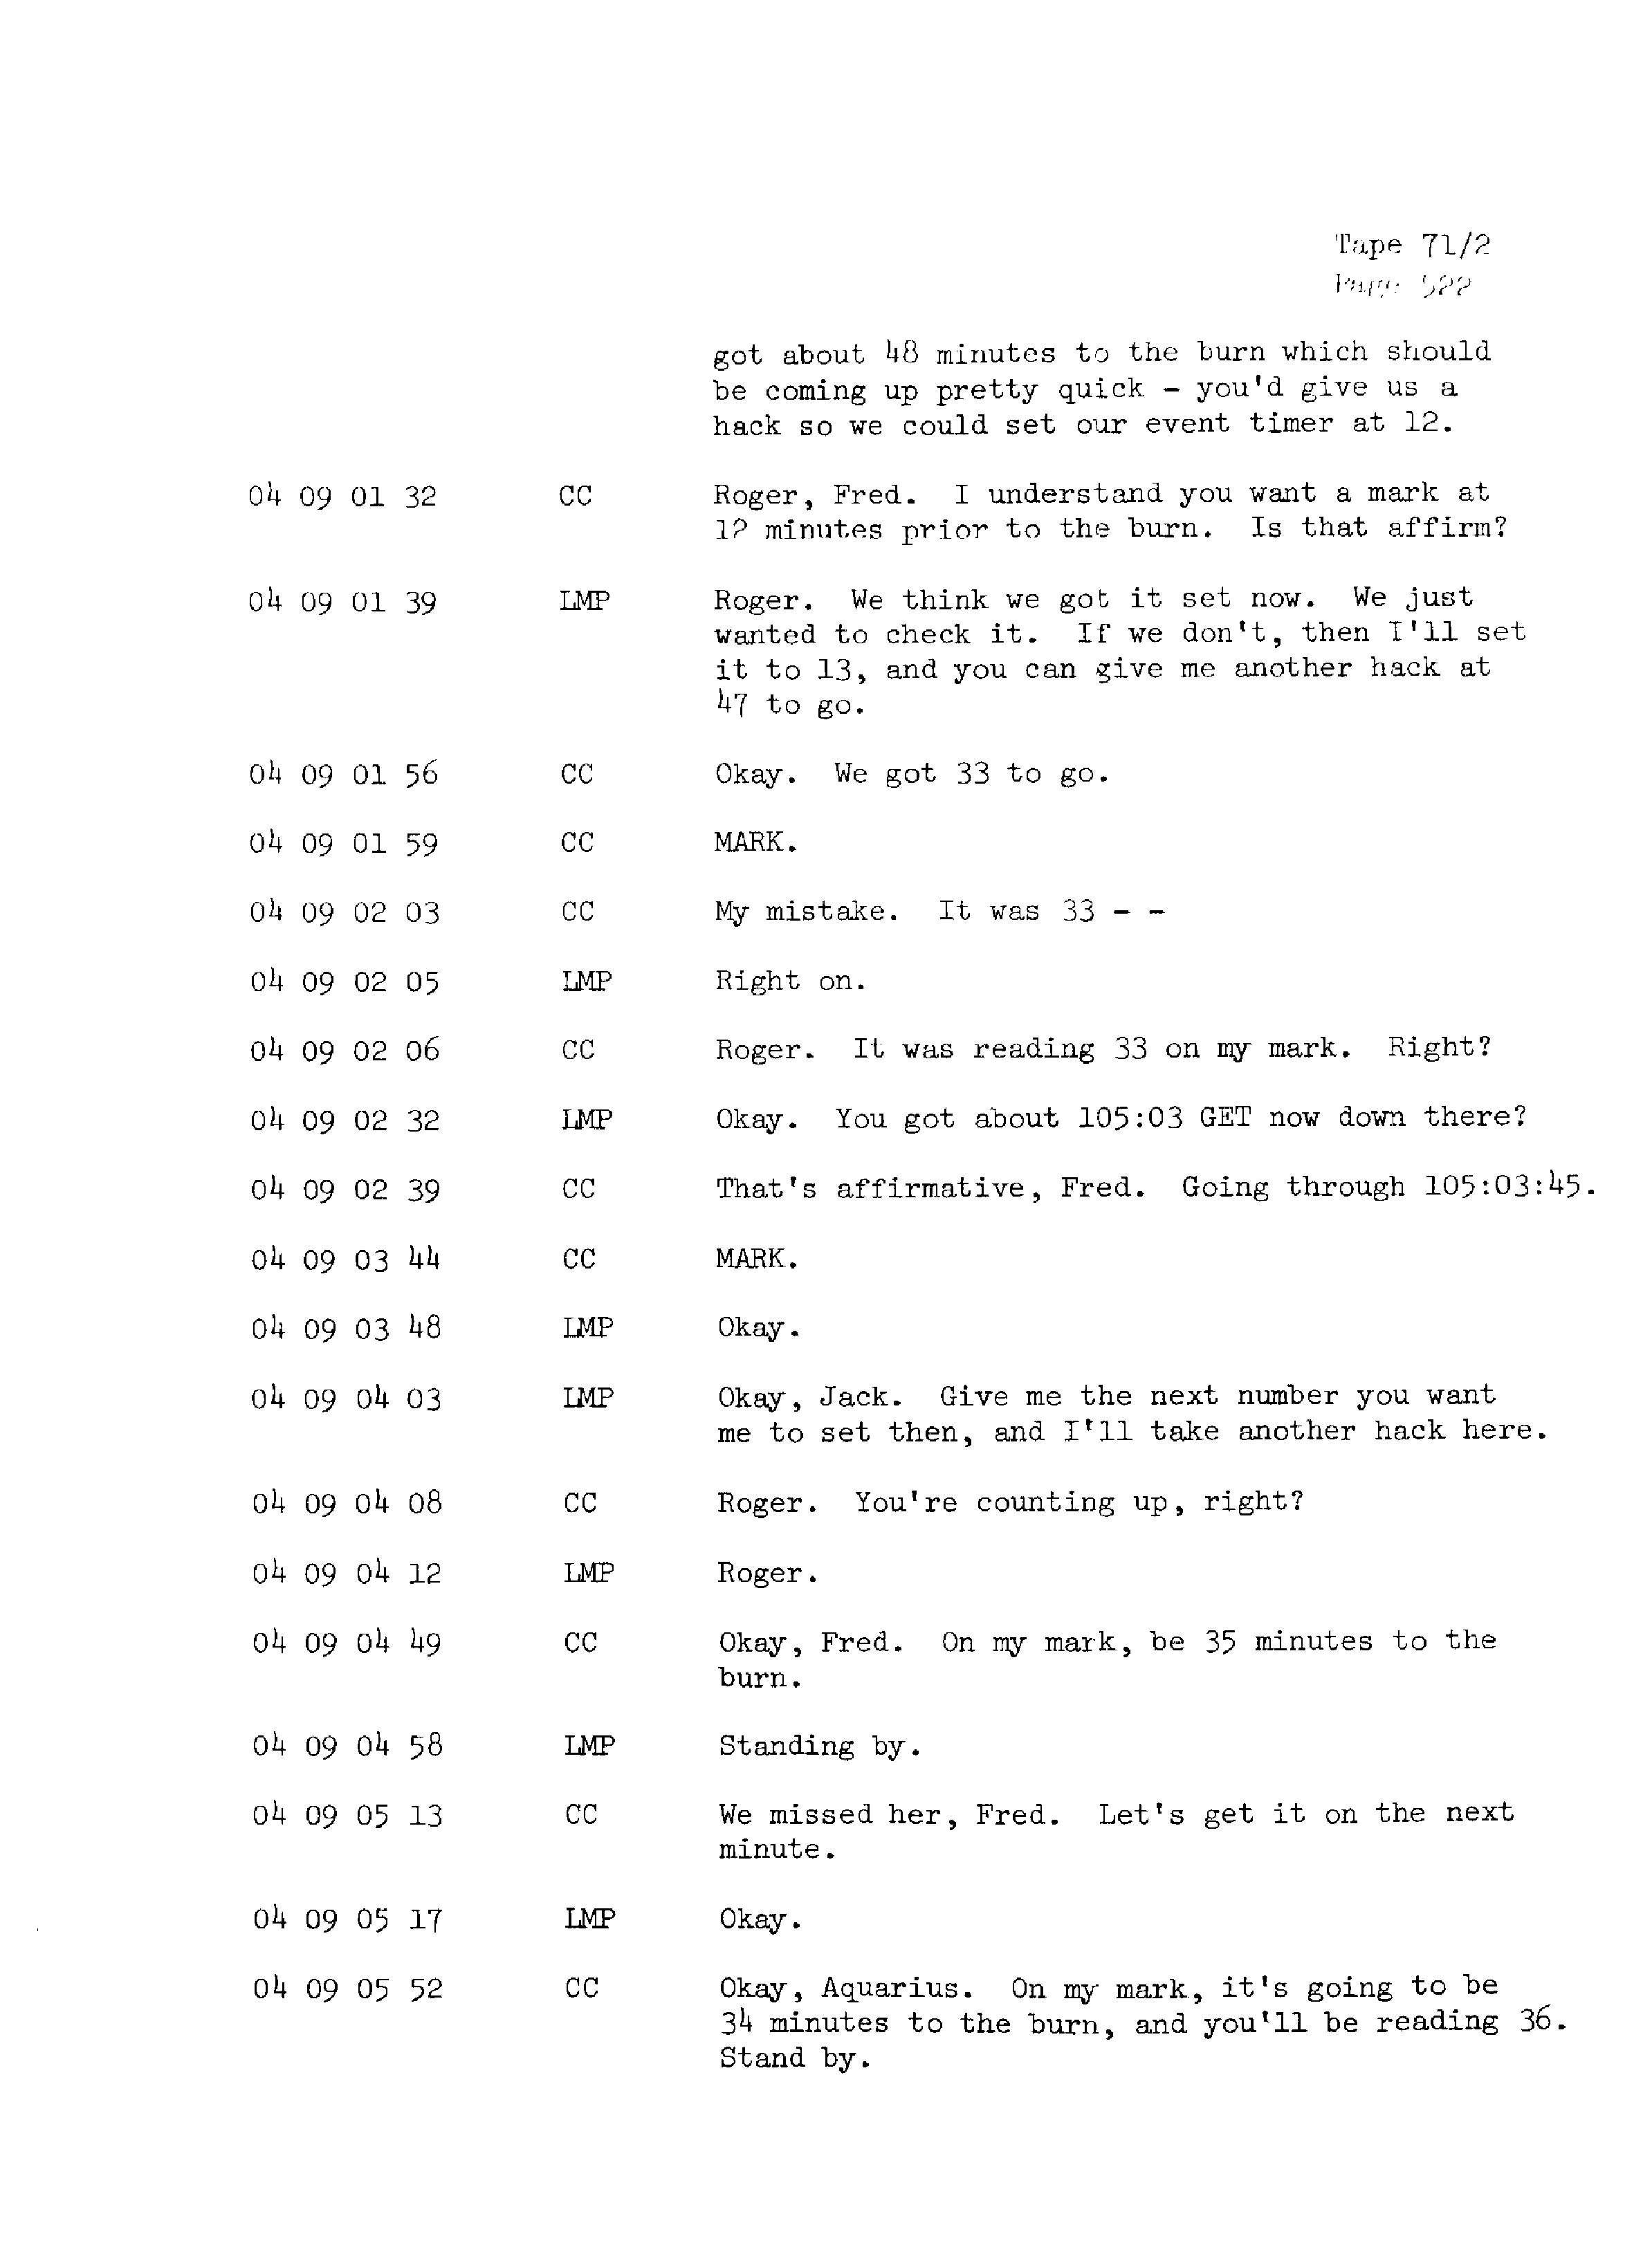 Page 529 of Apollo 13’s original transcript